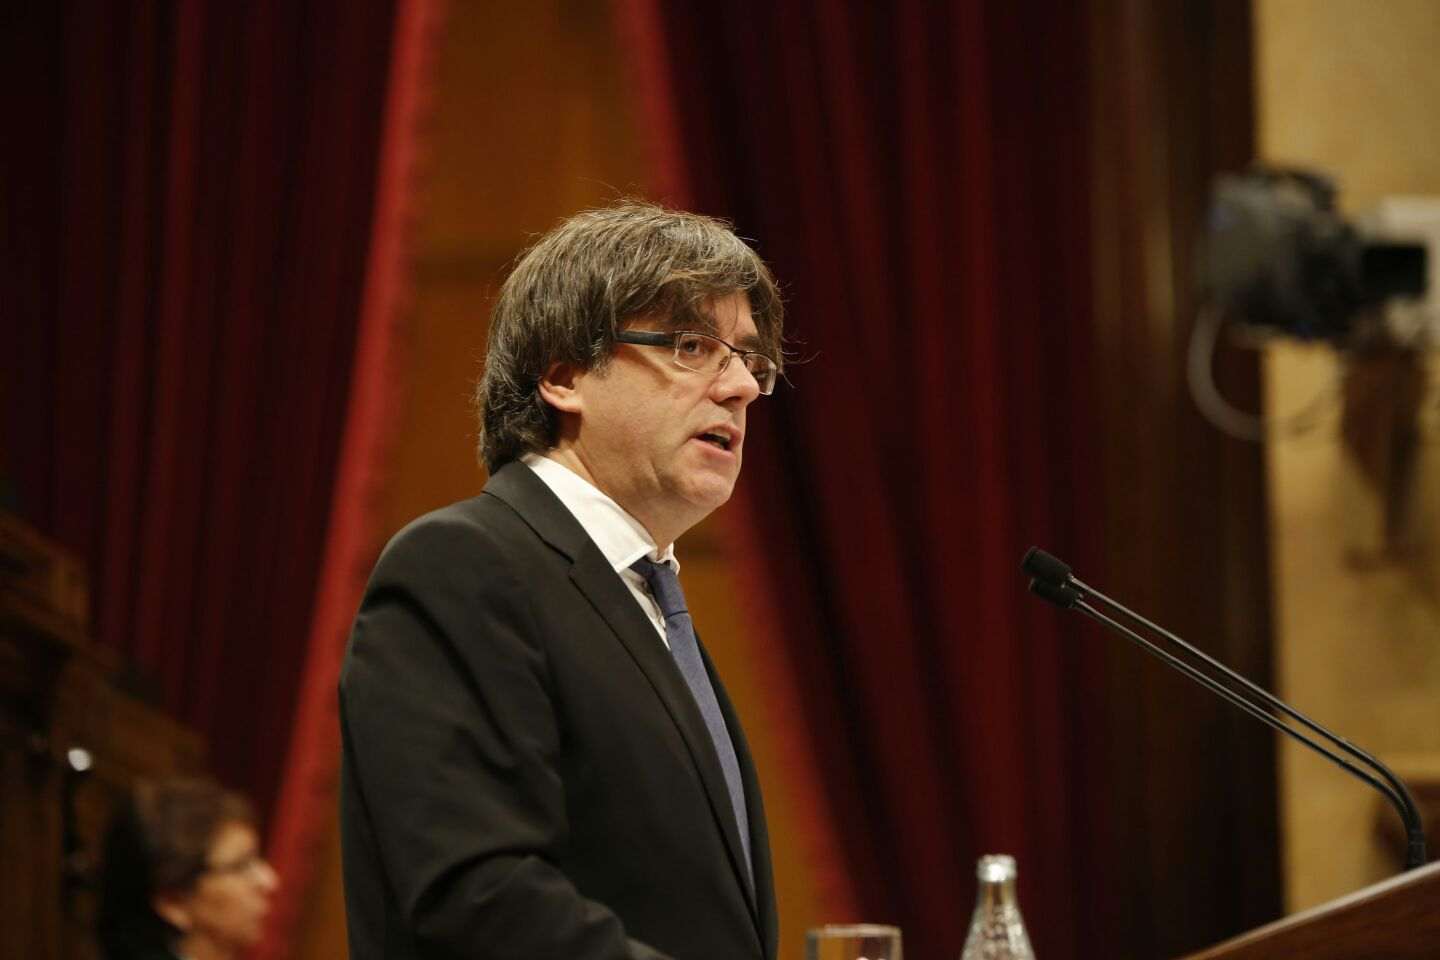 Recogen firmas para que Puigdemont se presente a las elecciones catalanas